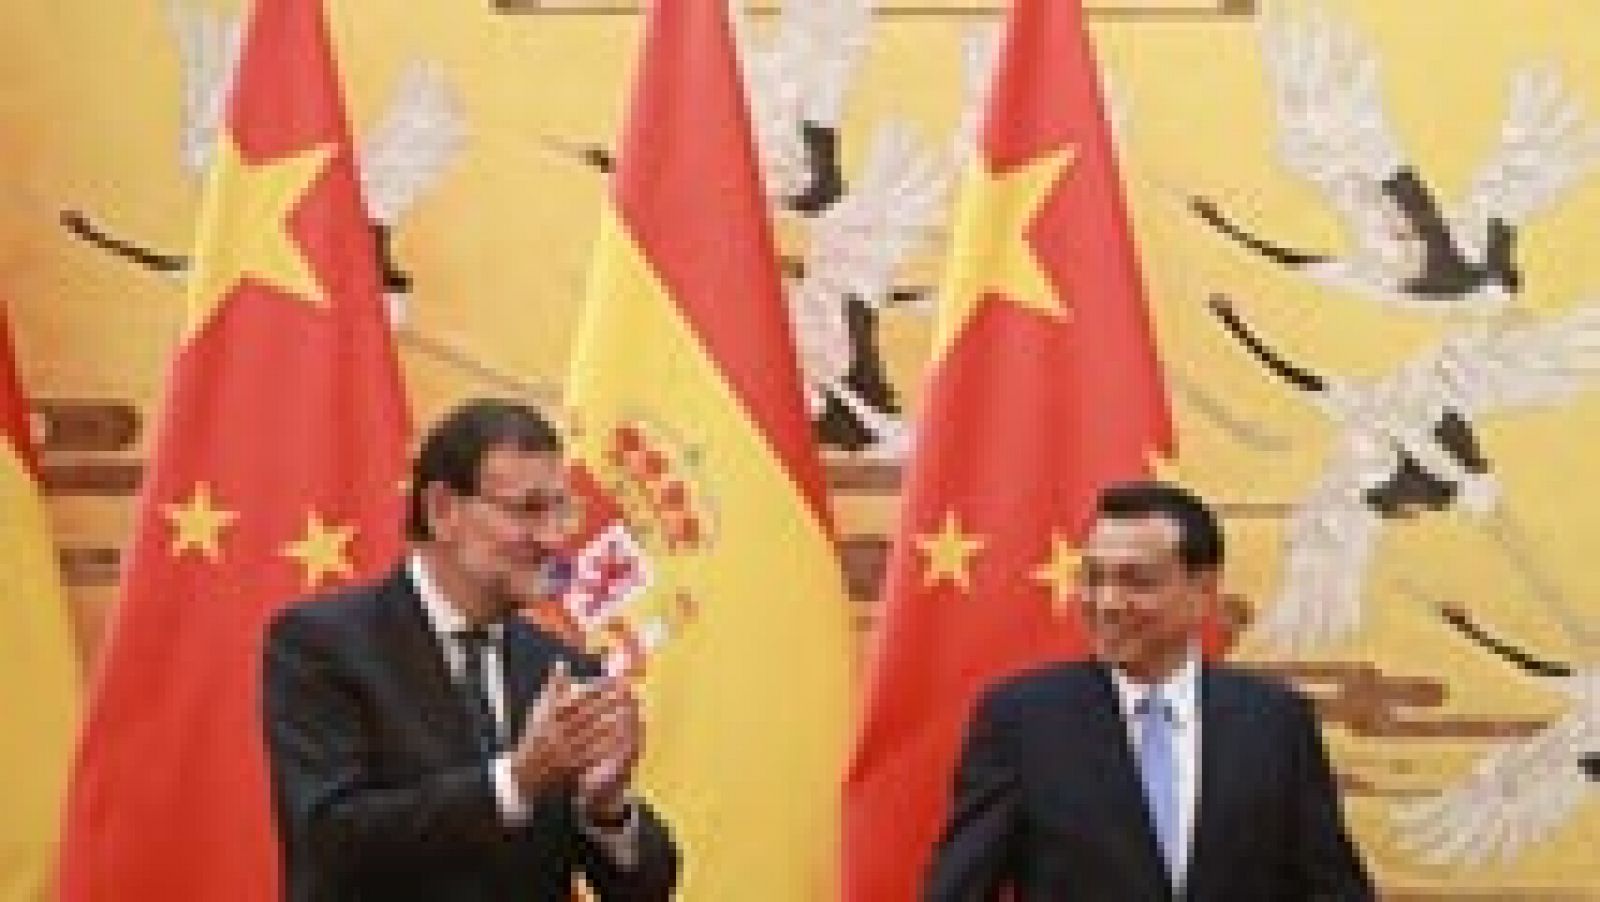 Rajoy asegura en China que sus reformas harán que el crecimiento sea sostenible